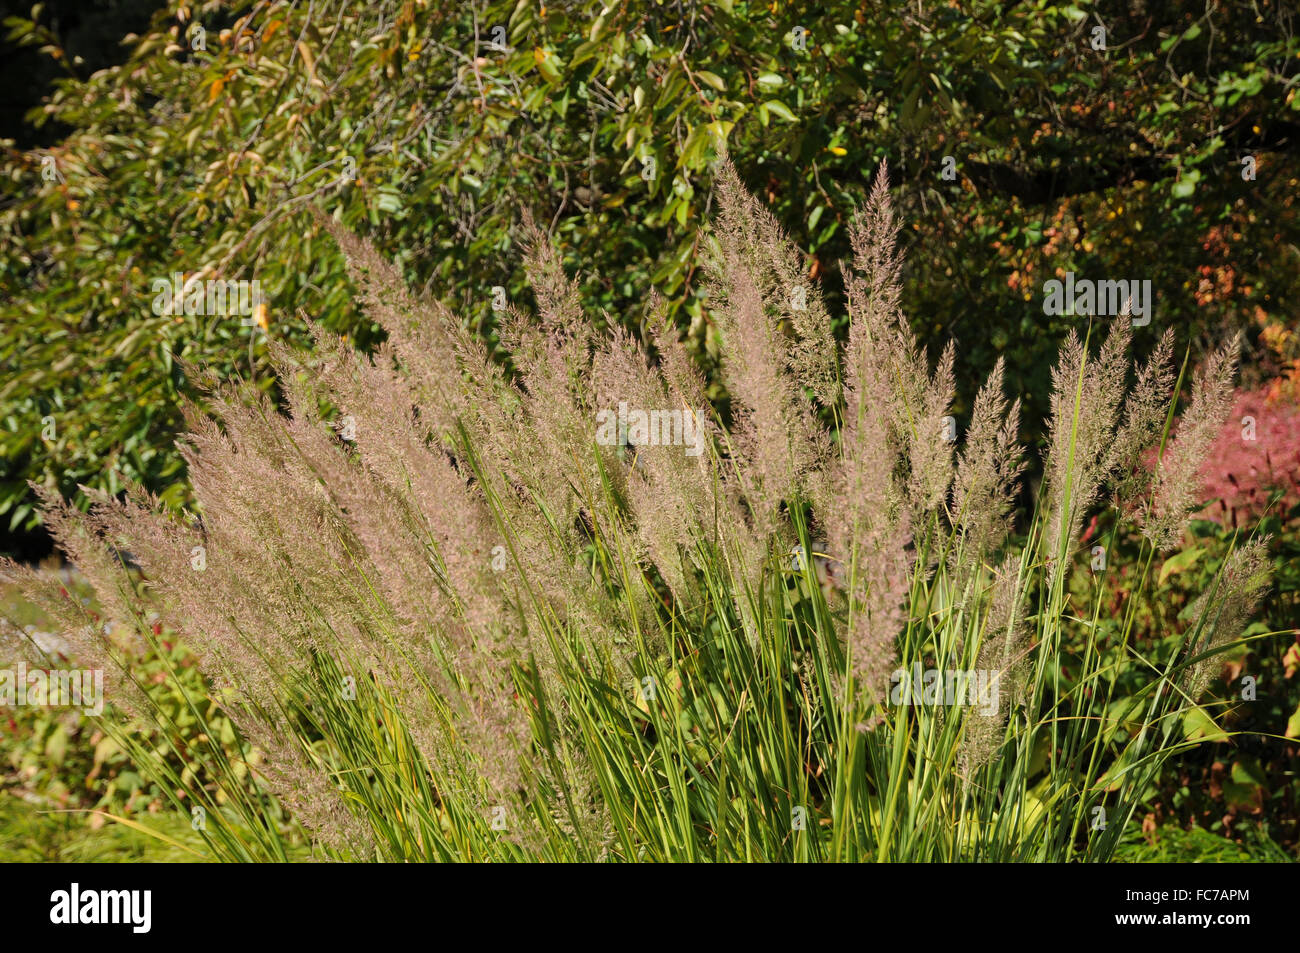 Korean feather reed grass Stock Photo